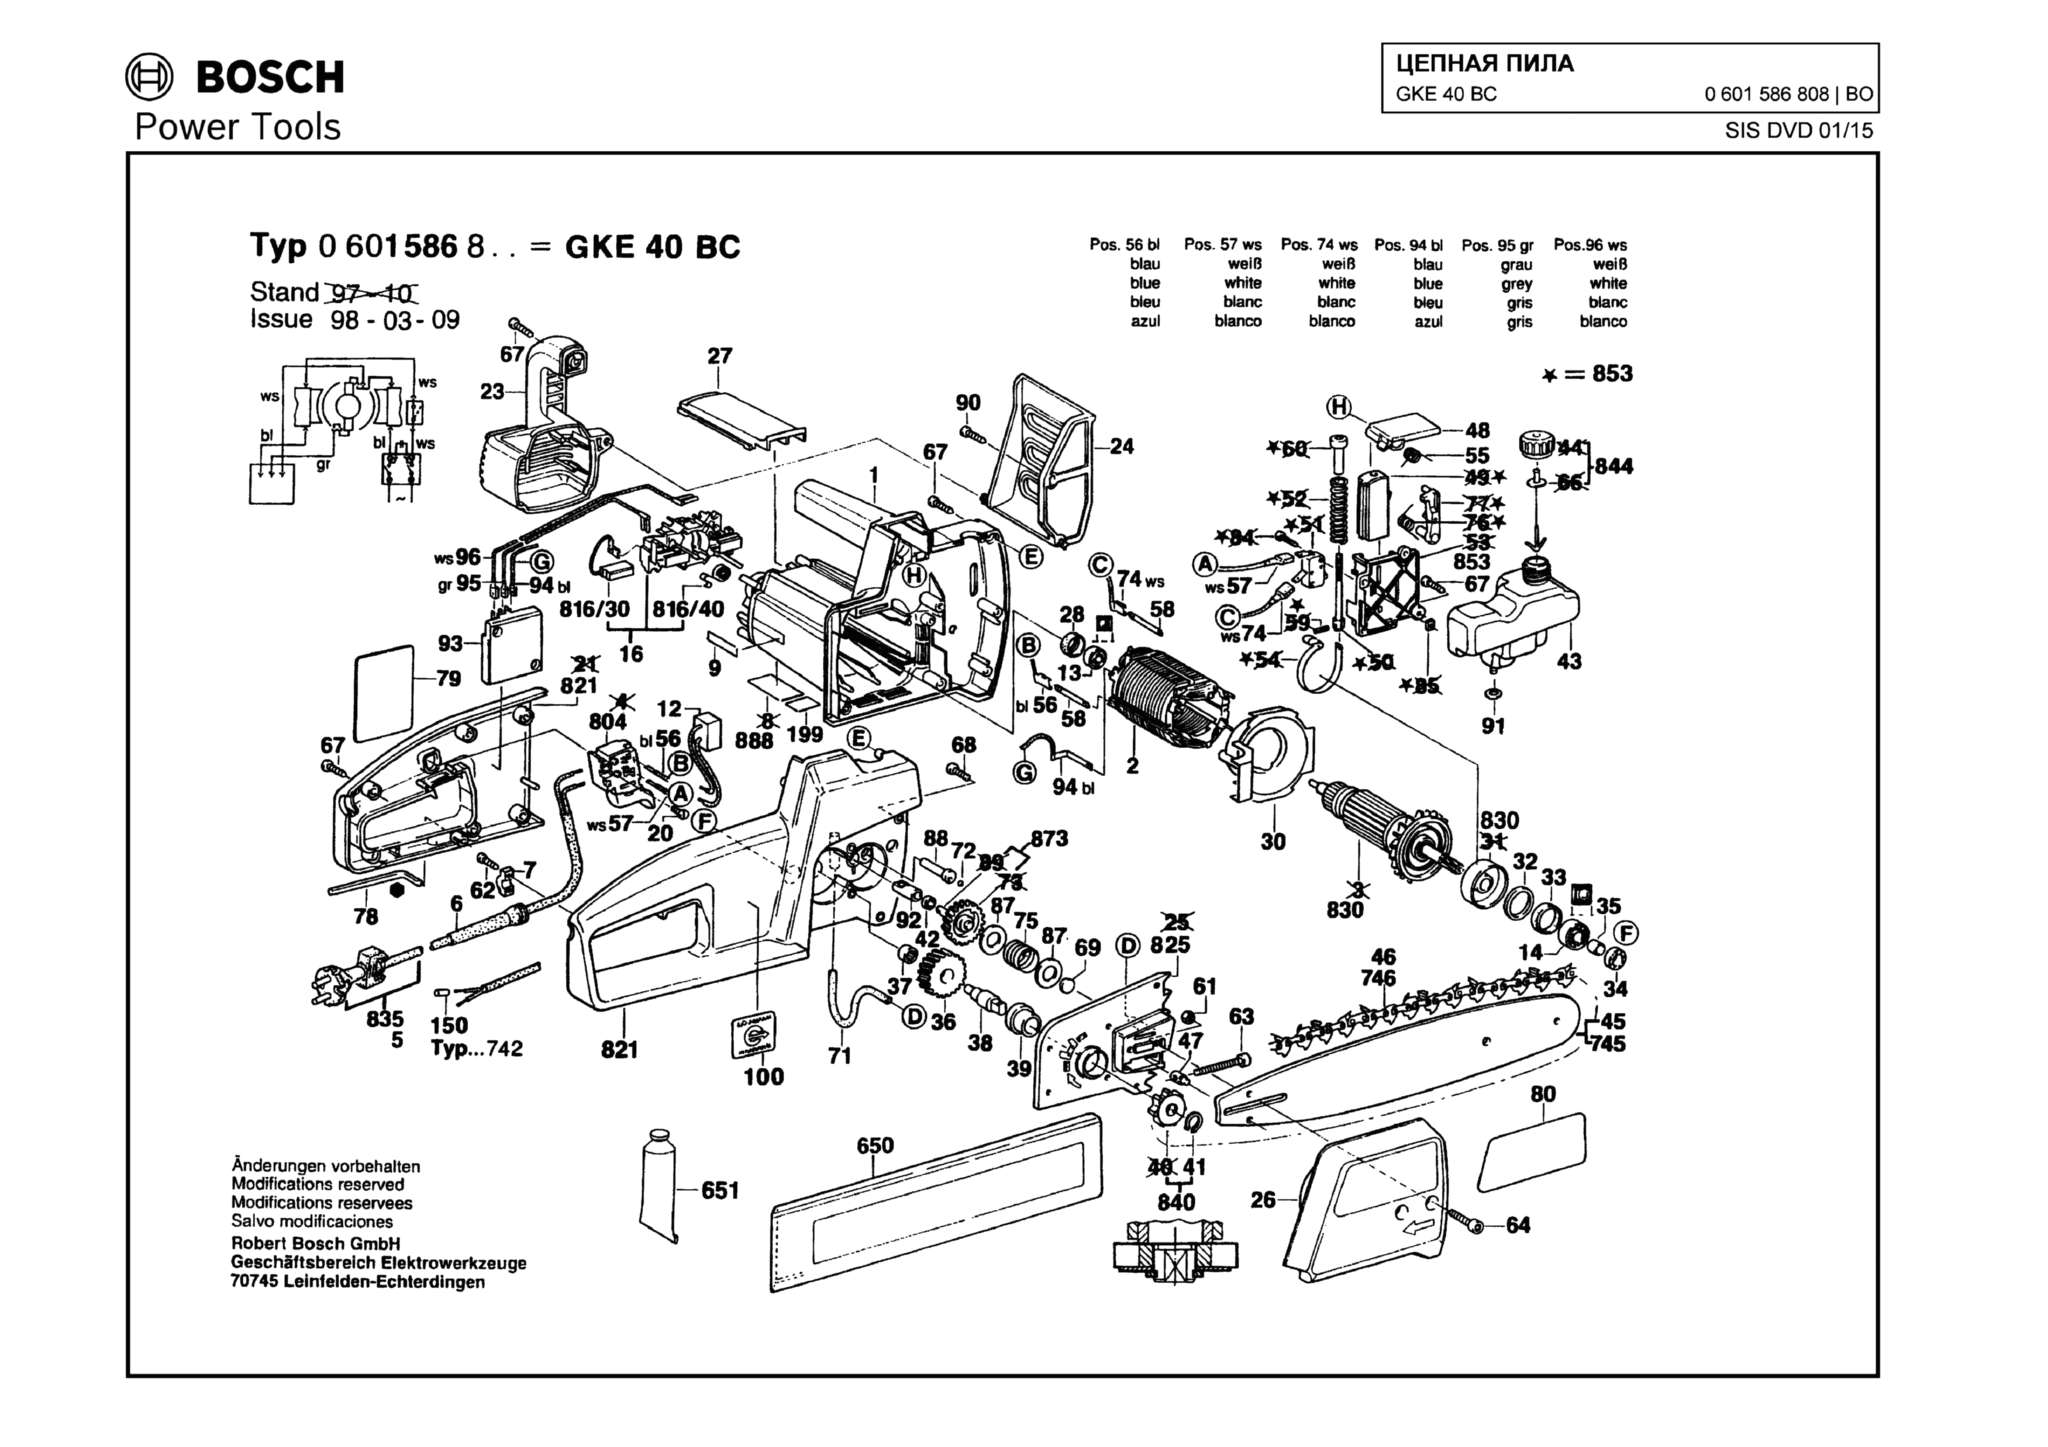 Запчасти, схема и деталировка Bosch GKE 40 BC (ТИП 0601586808)